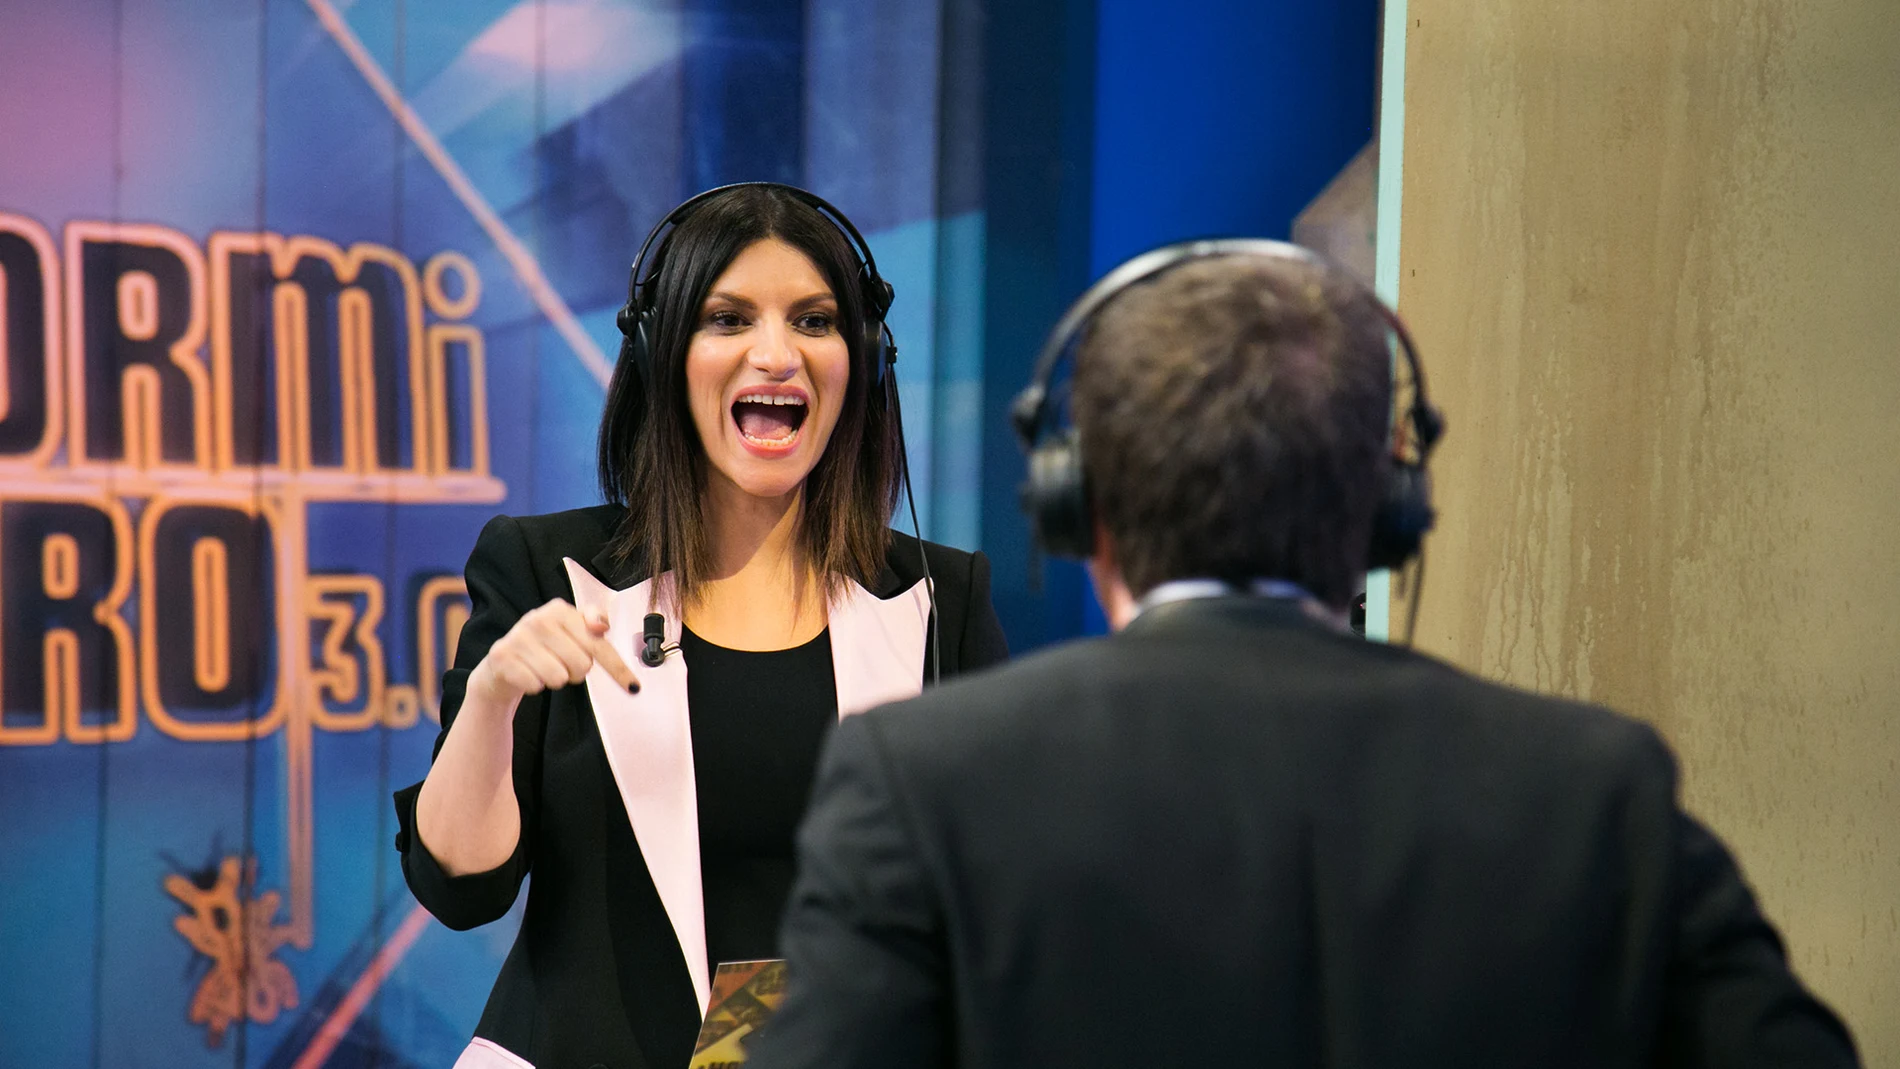 ¿Serán capaces Pablo Motos y Laura Pausini de comunicarse sin oírse?